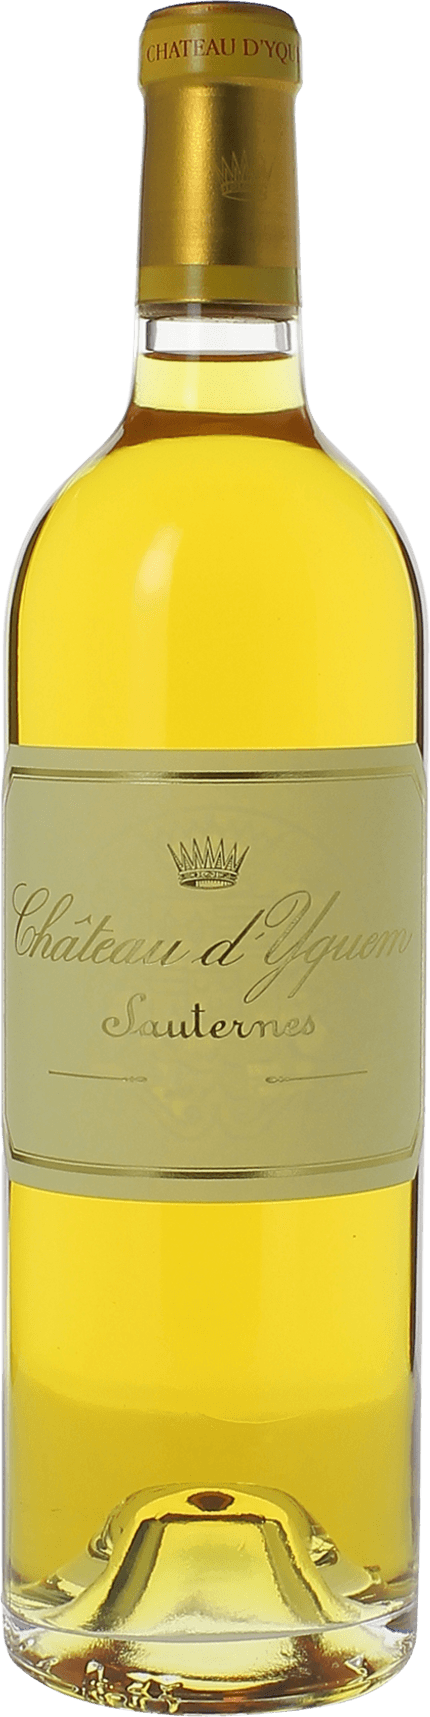 Yquem 2002 1er Grand cru class Sauternes, Bordeaux blanc